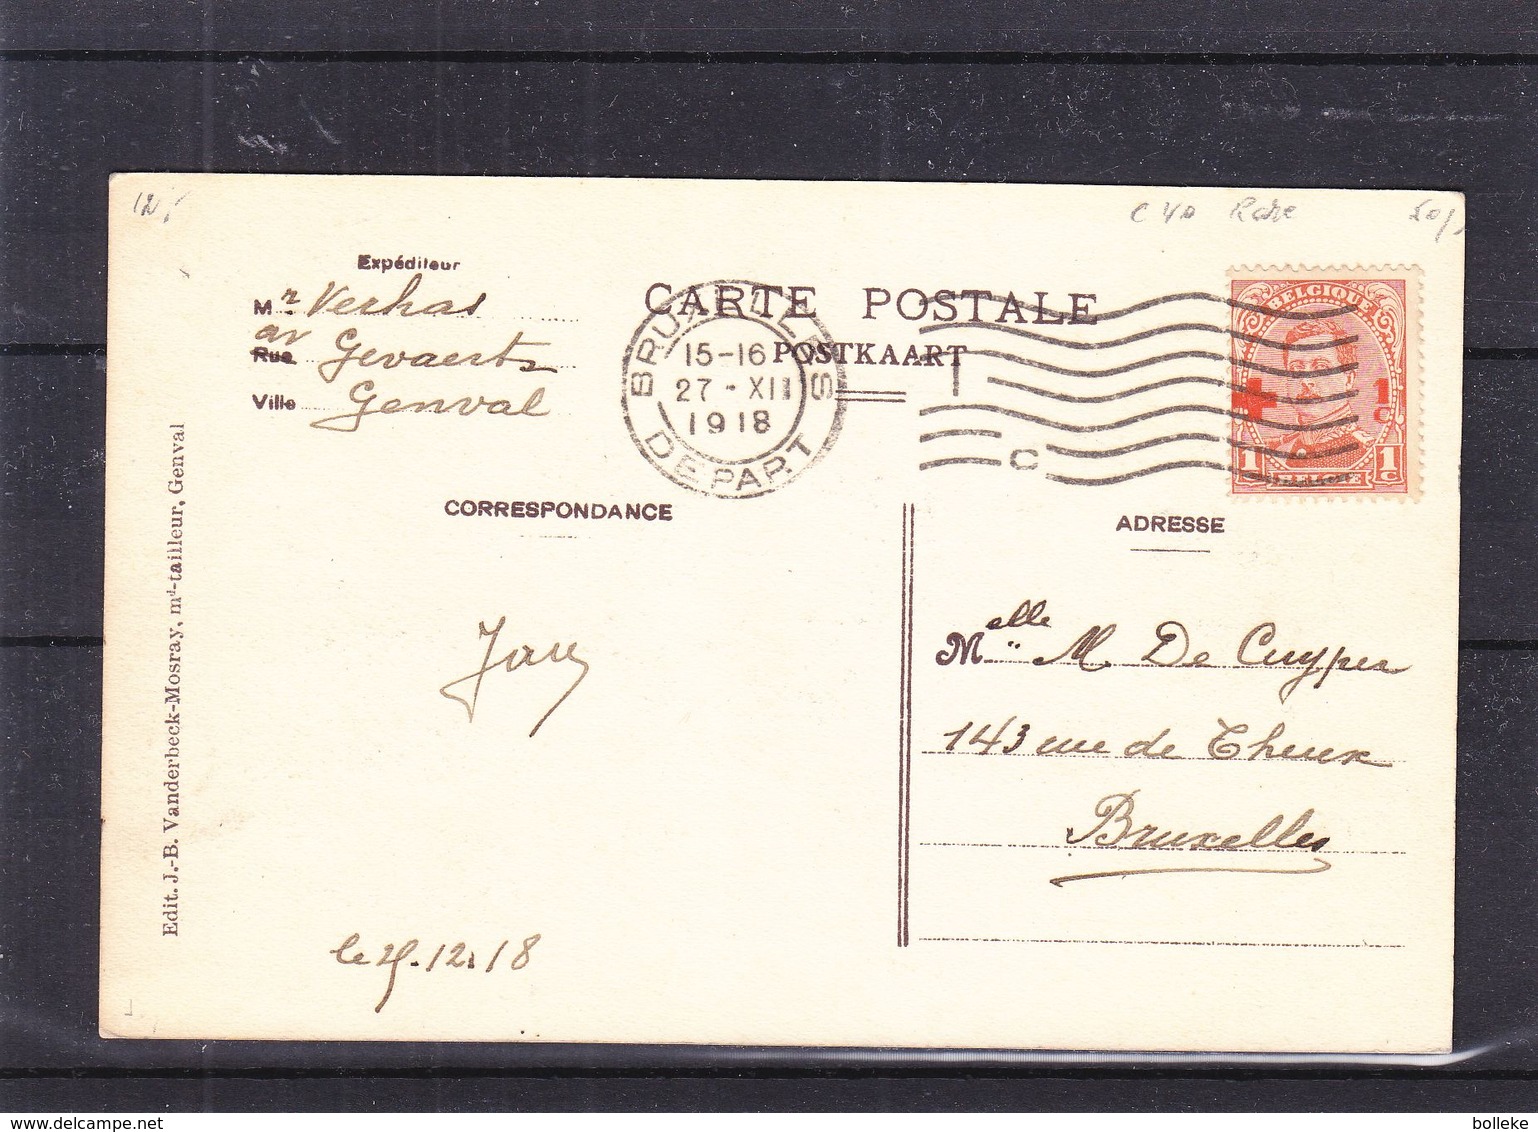 Croix Rouge - Belgique - Carte Postale De 1918 - Oblit Bruxelles - Avec Le 1c - Rare - Valeur 40 Euros - 1918 Rotes Kreuz